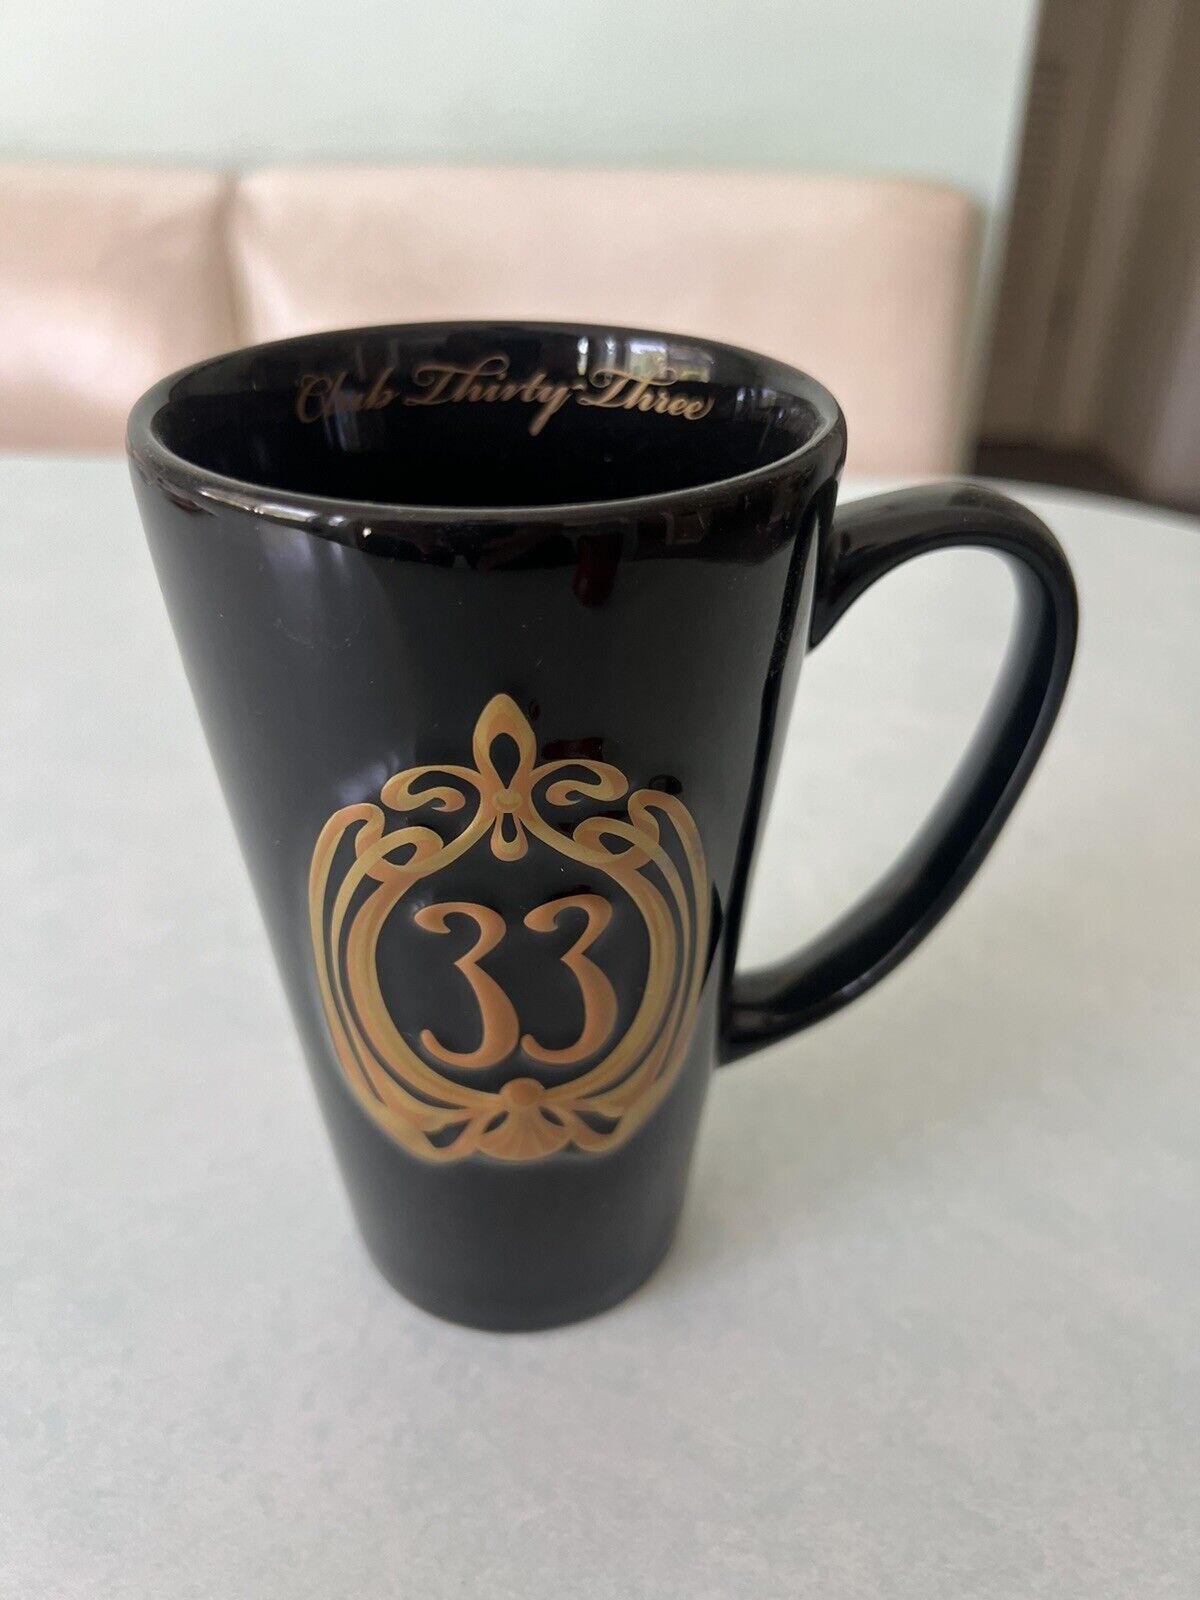 Disneyland Club 33 Logo Coffee Mug Cup